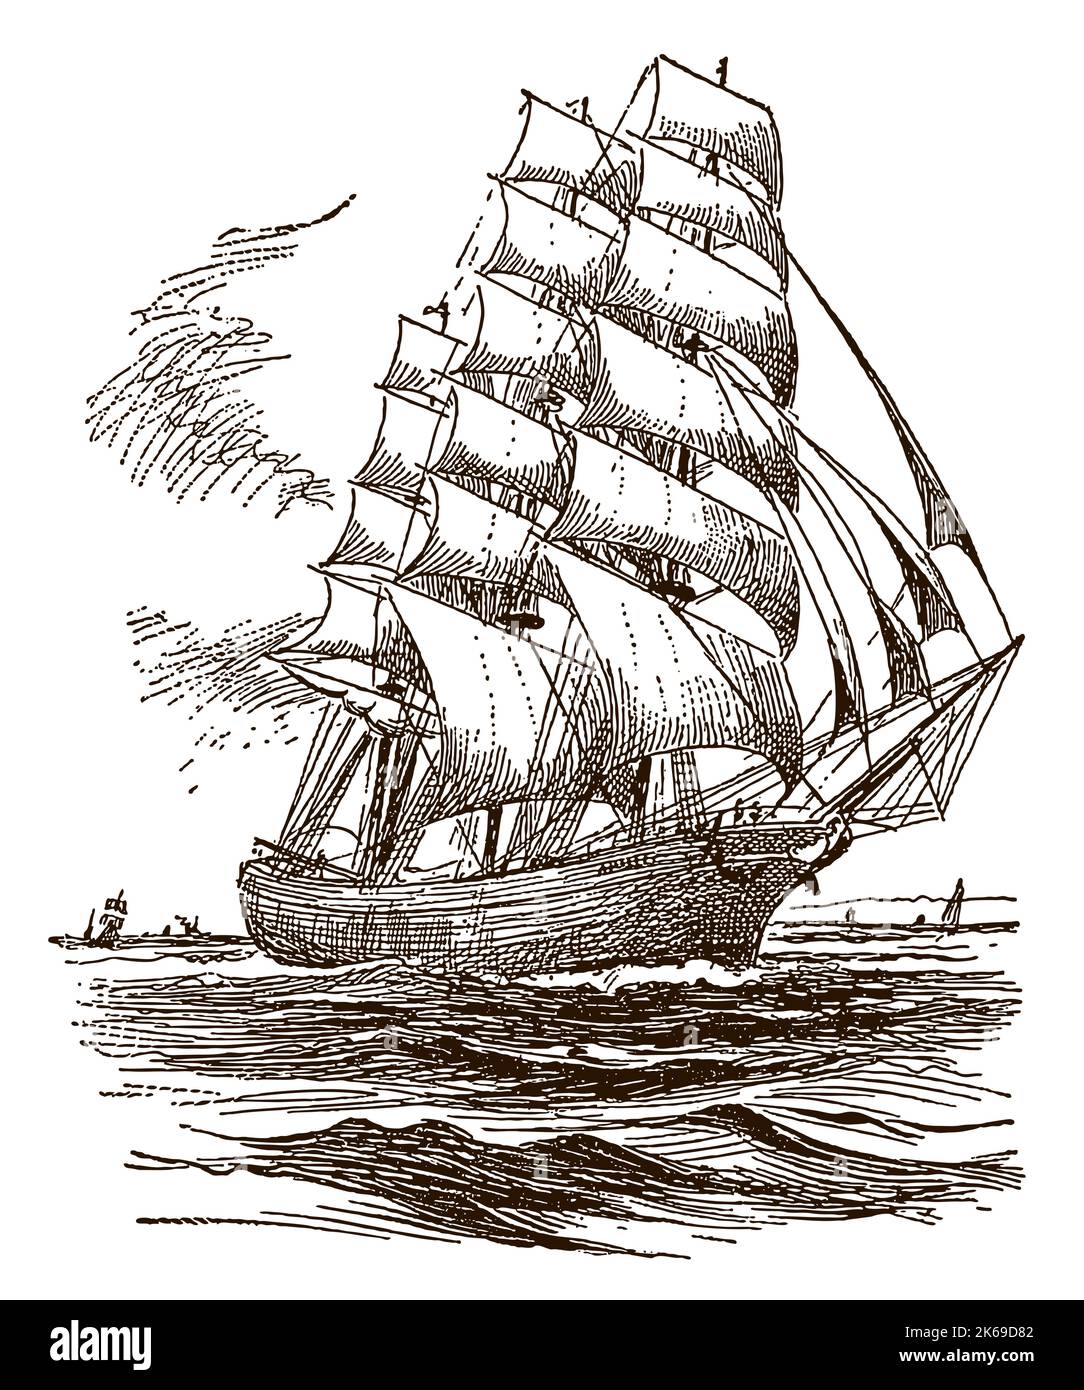 Coupe-monde antique naviguant sur une mer ondulée Illustration de Vecteur